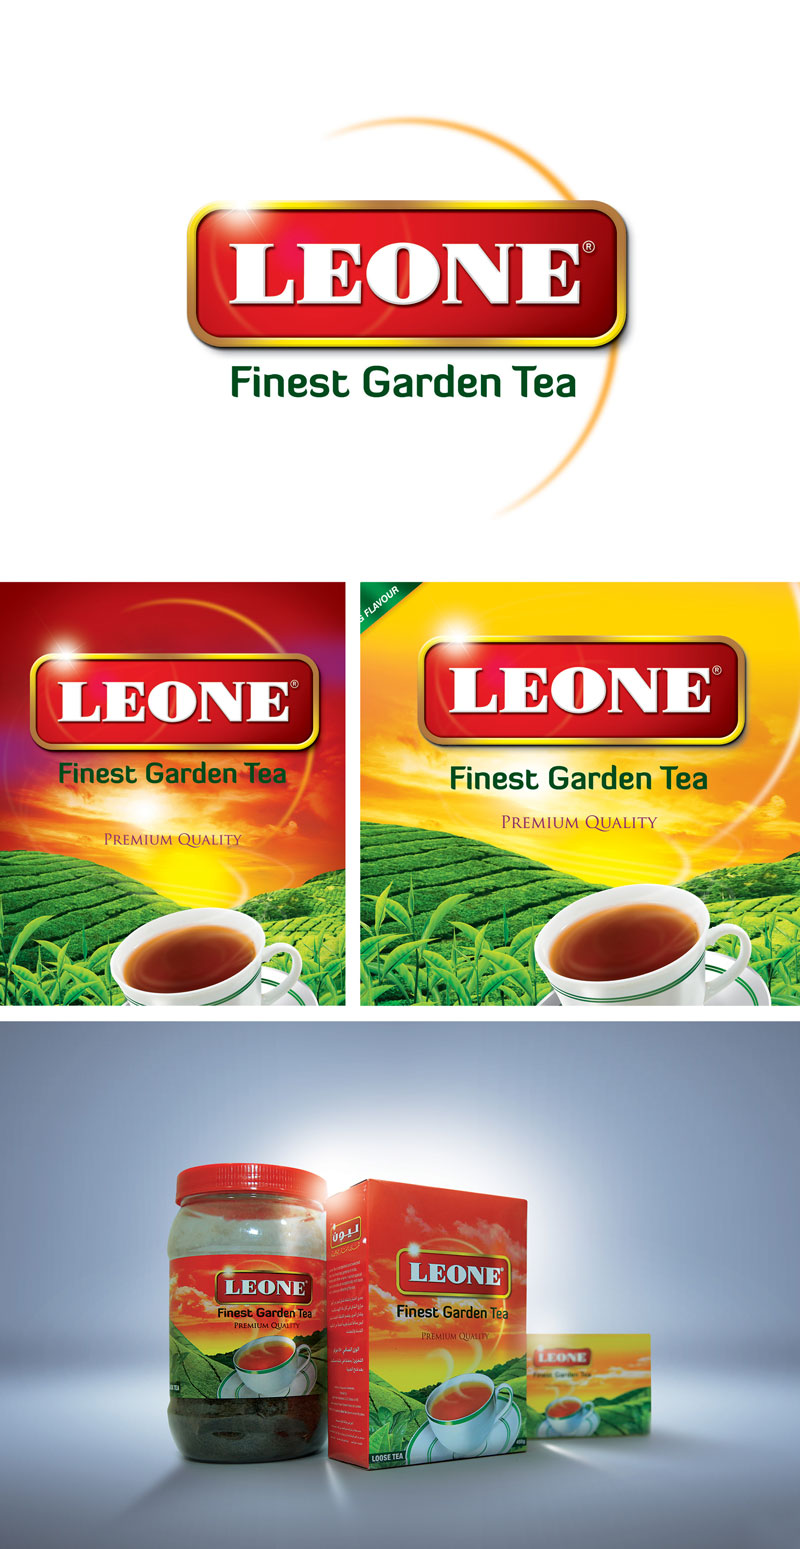 Leone-tea